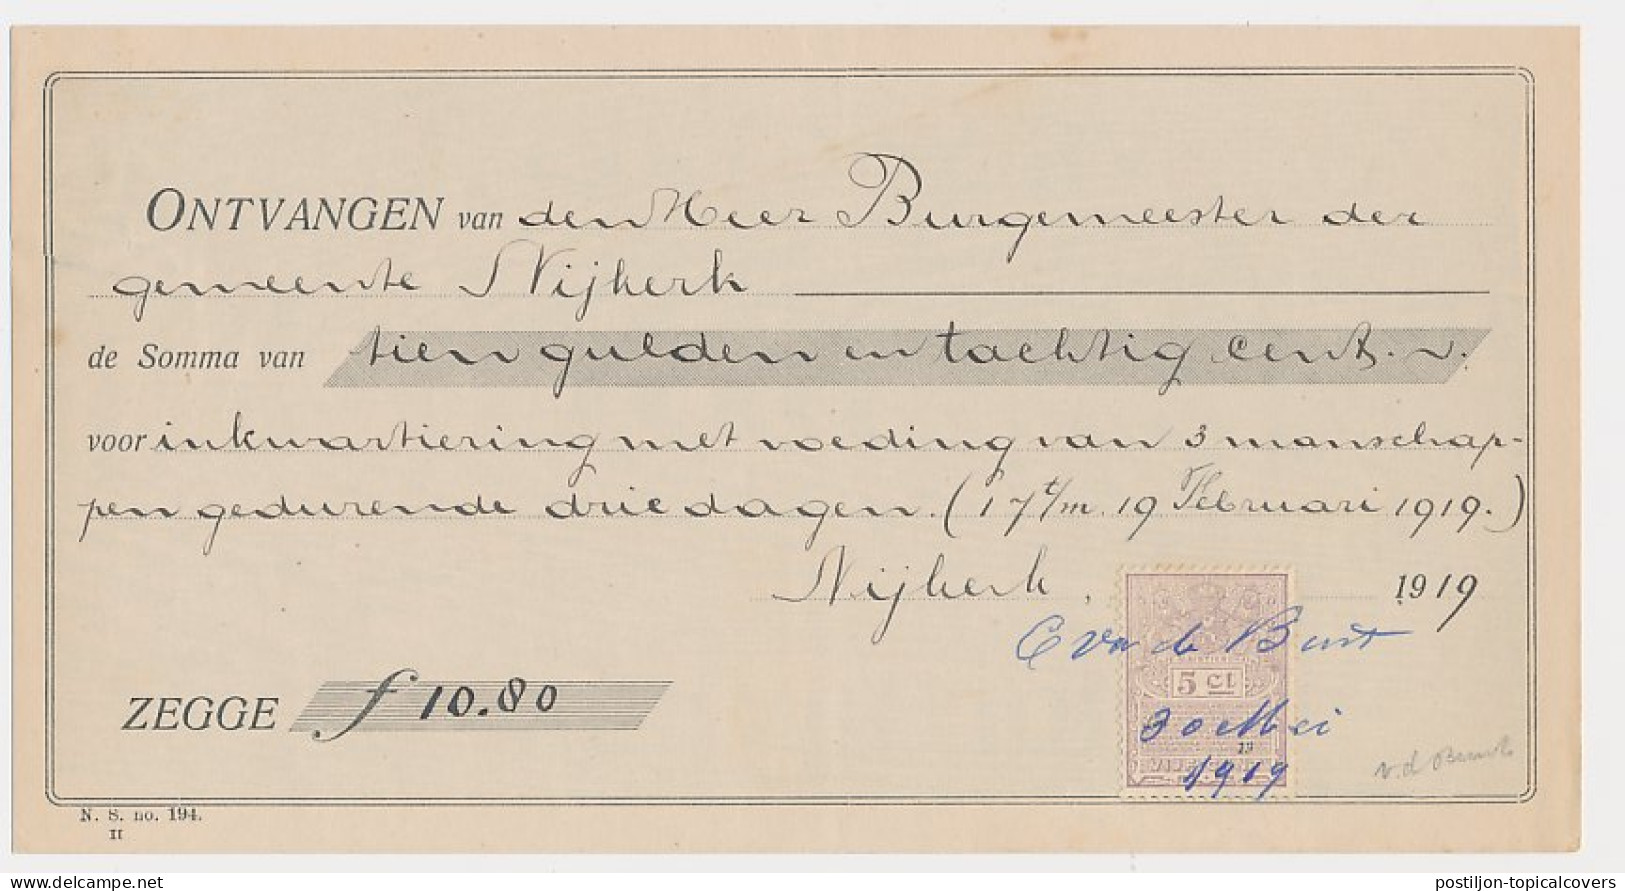  Plakzegel 5 Ct Den 19.. - Nijkerk 1919 - Steuermarken